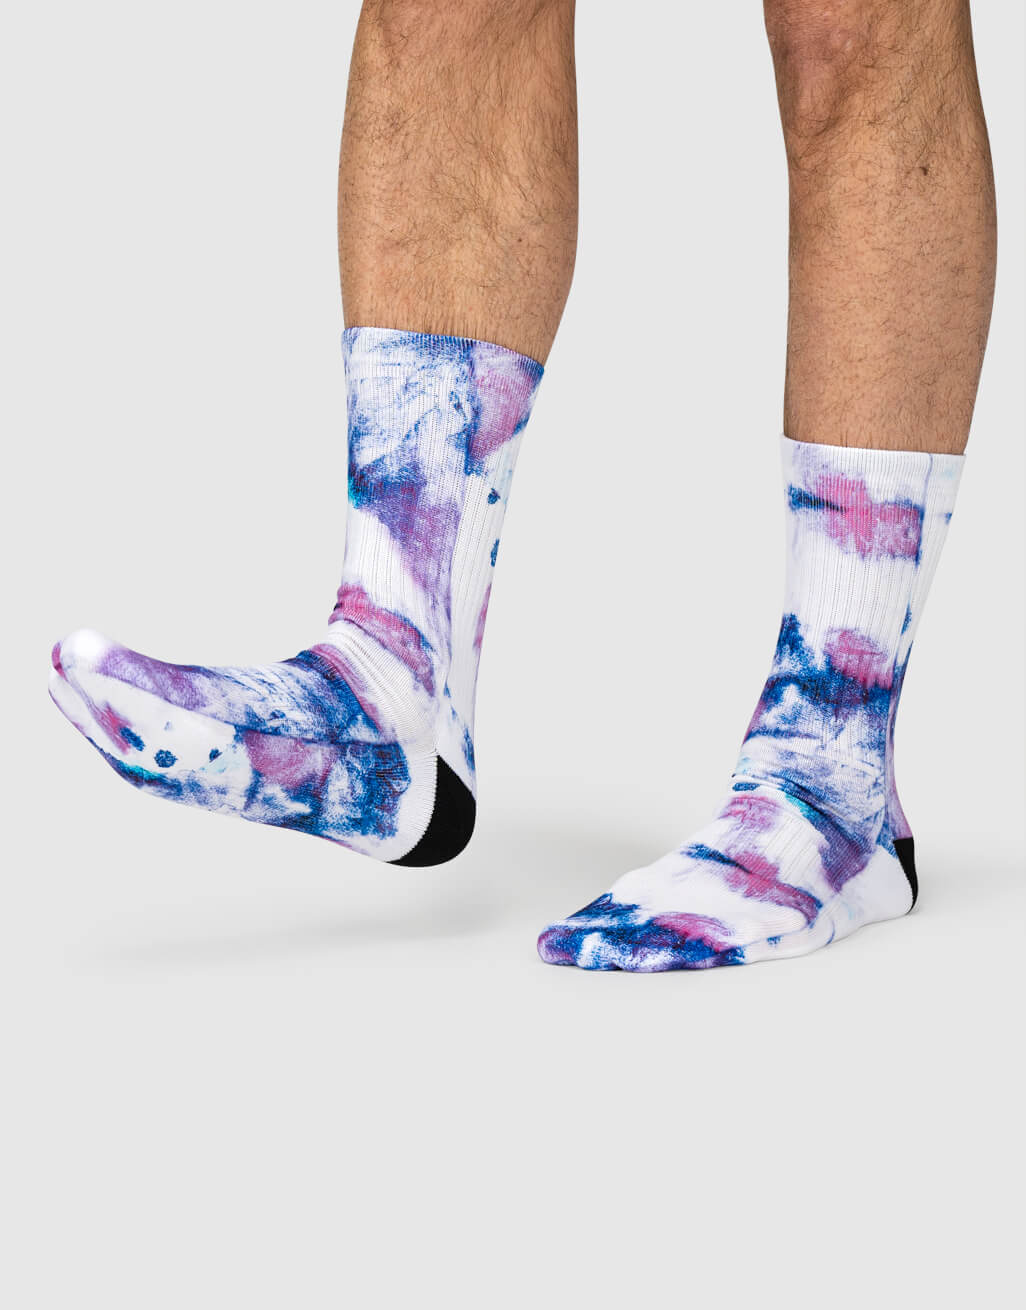 blotch-tie-dye-socks